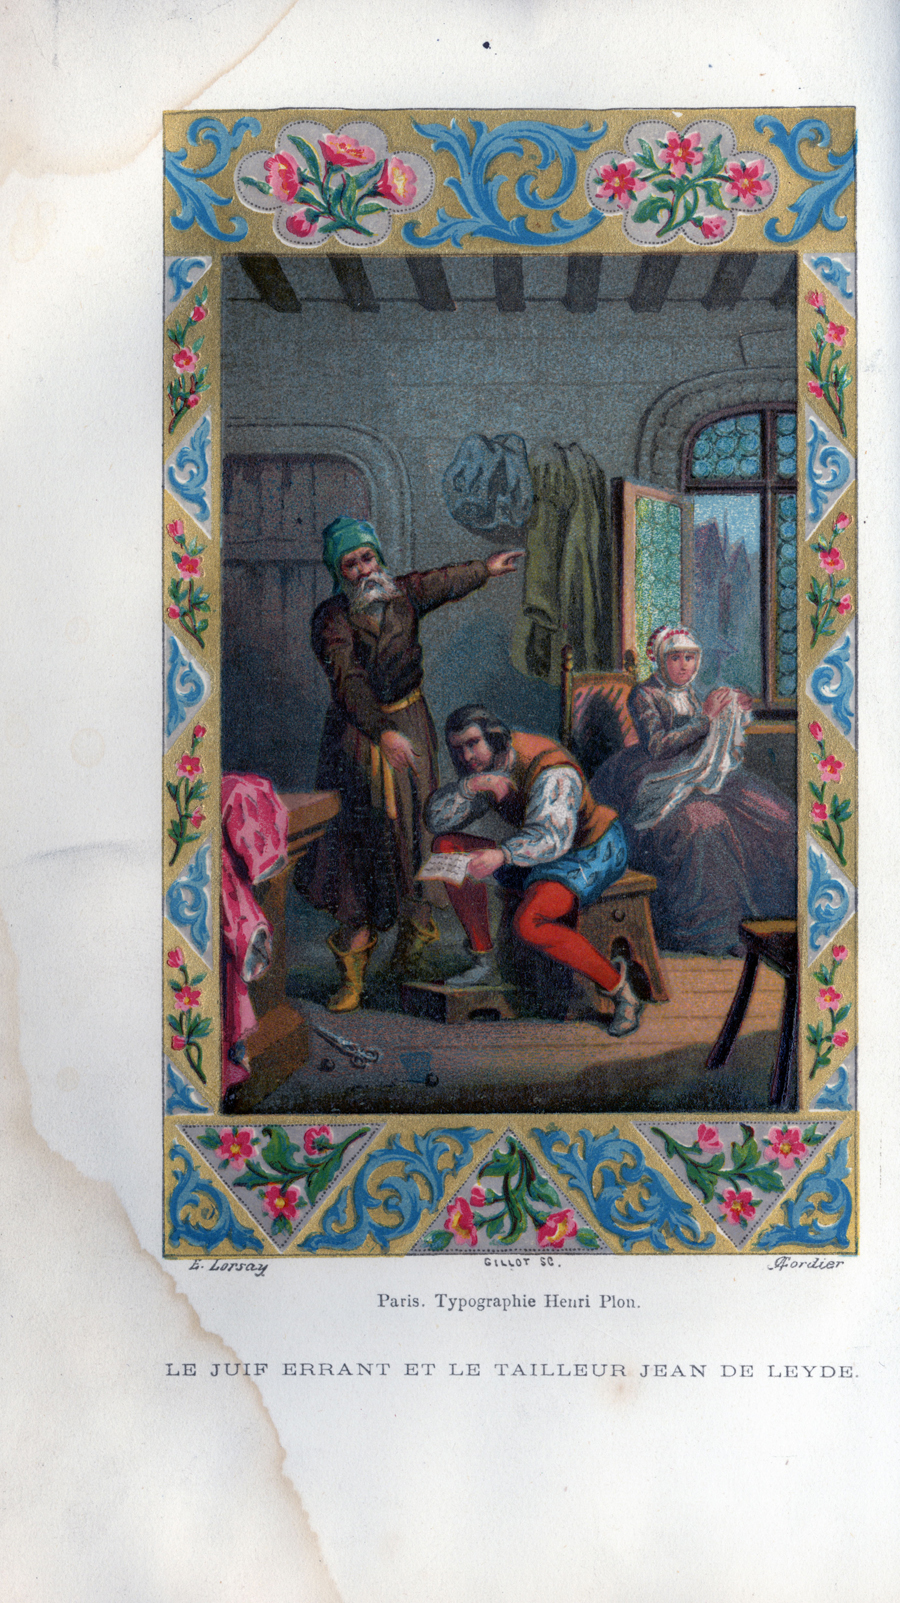 Scene with description that reads "Le juif errant et le tailleur Jean de Leyde"